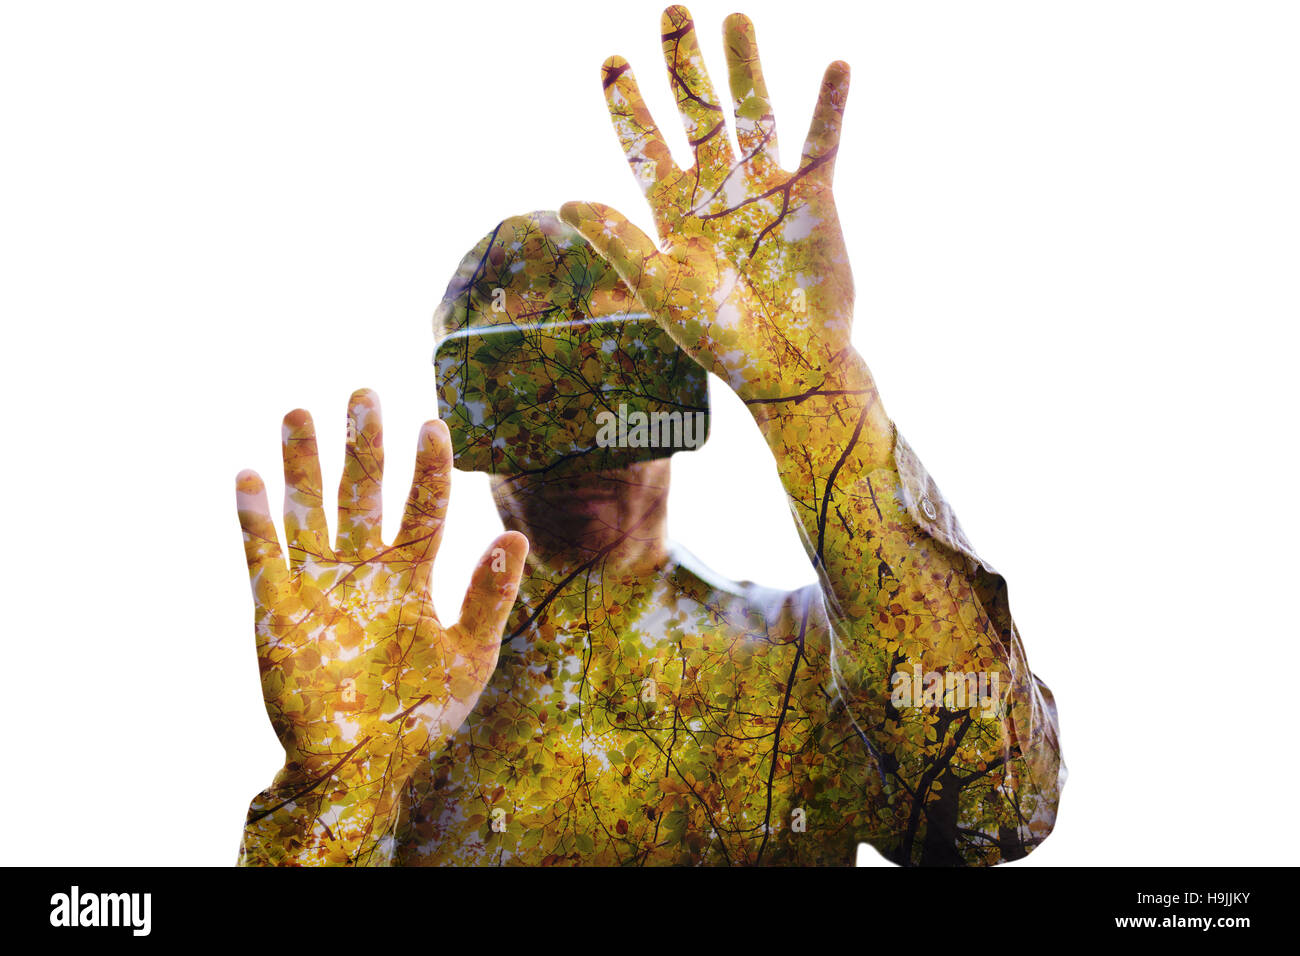 Image de l'homme composite en utilisant un appareil de réalité virtuelle Banque D'Images